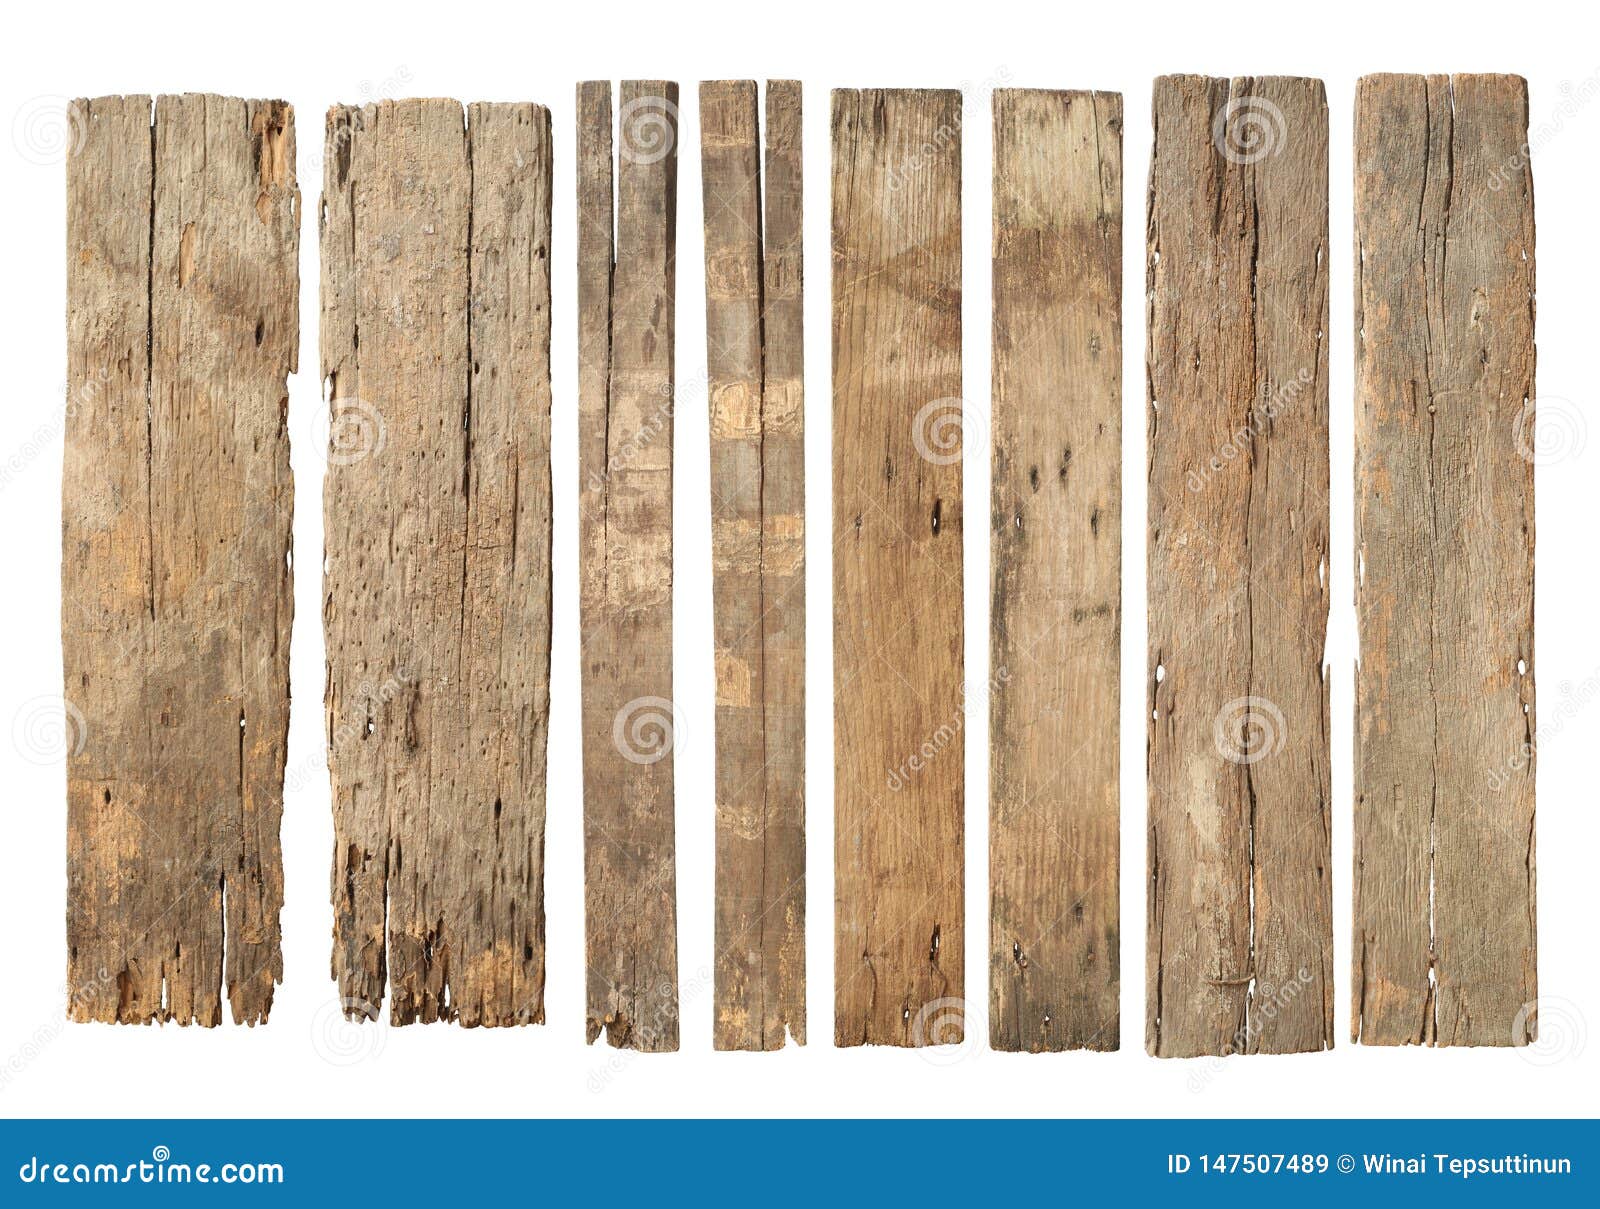 wood plank weathered damaged set